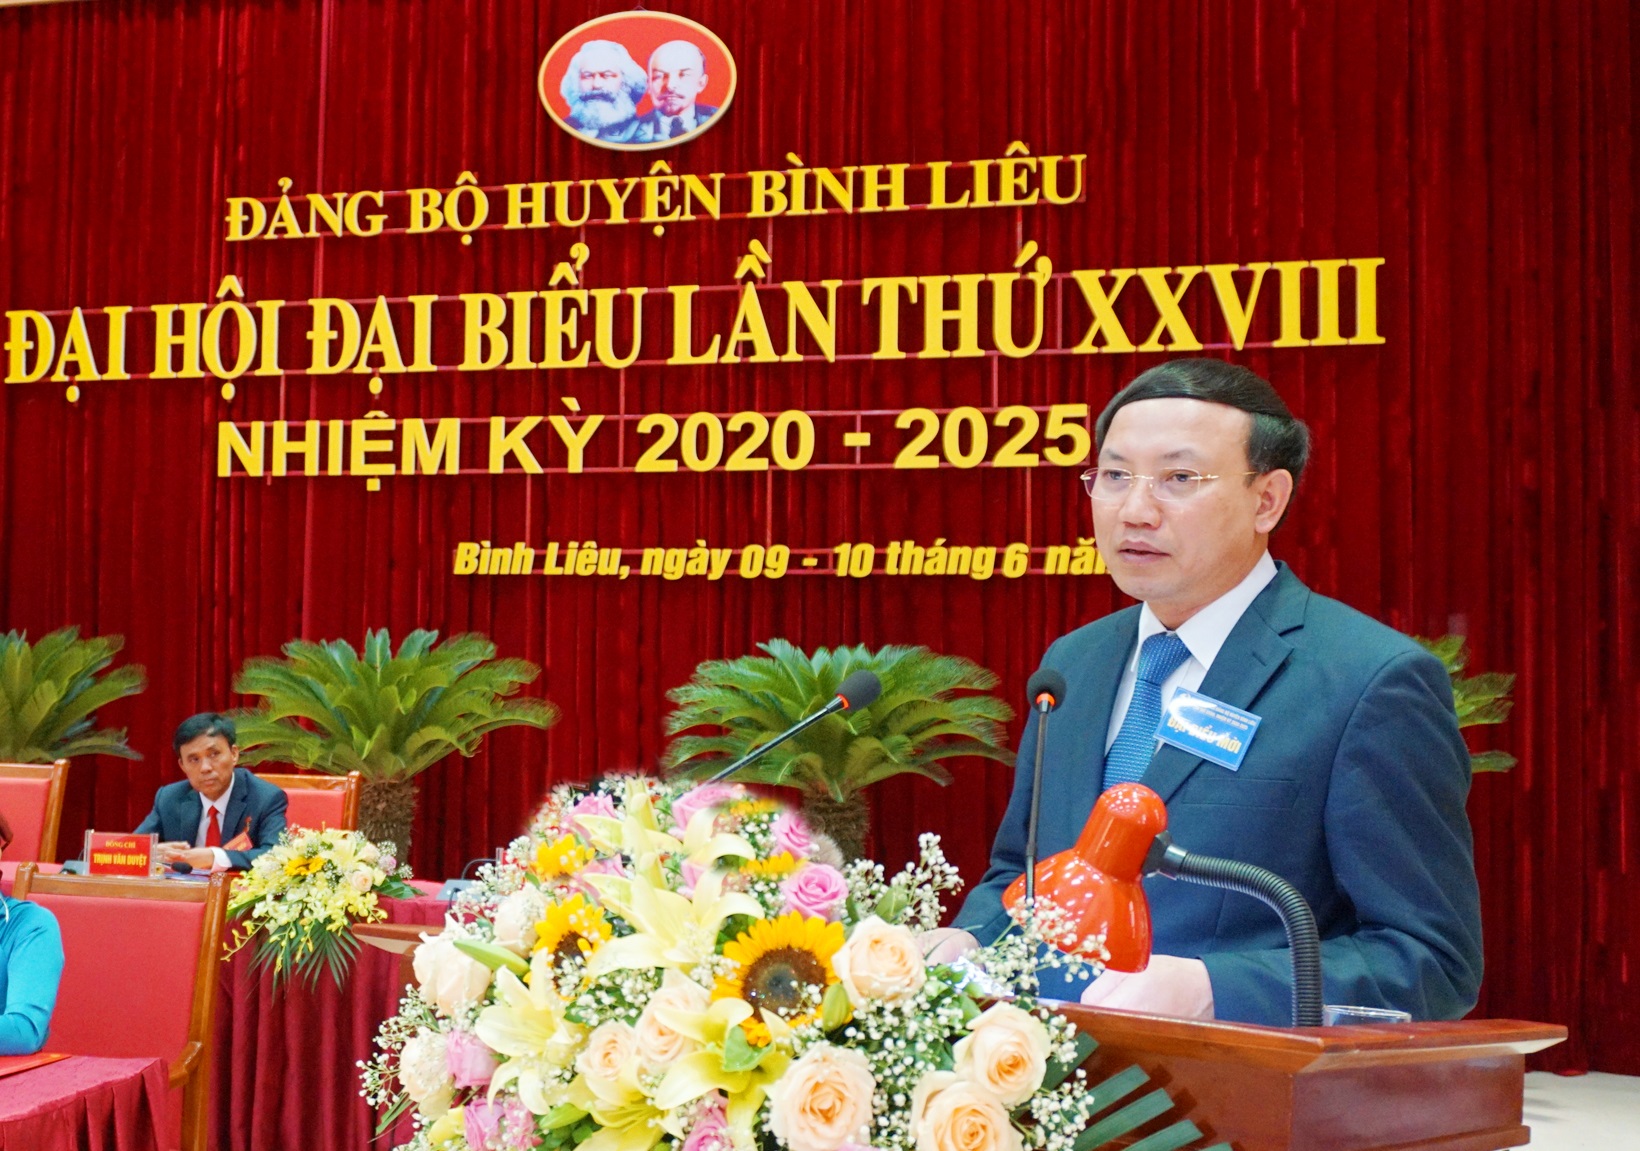 Đồng chí Nguyễn Xuân Ký, Bí thư Tỉnh ủy, Chủ tịch HĐND tỉnh, phát biểu chỉ đạo tại Đại hội.